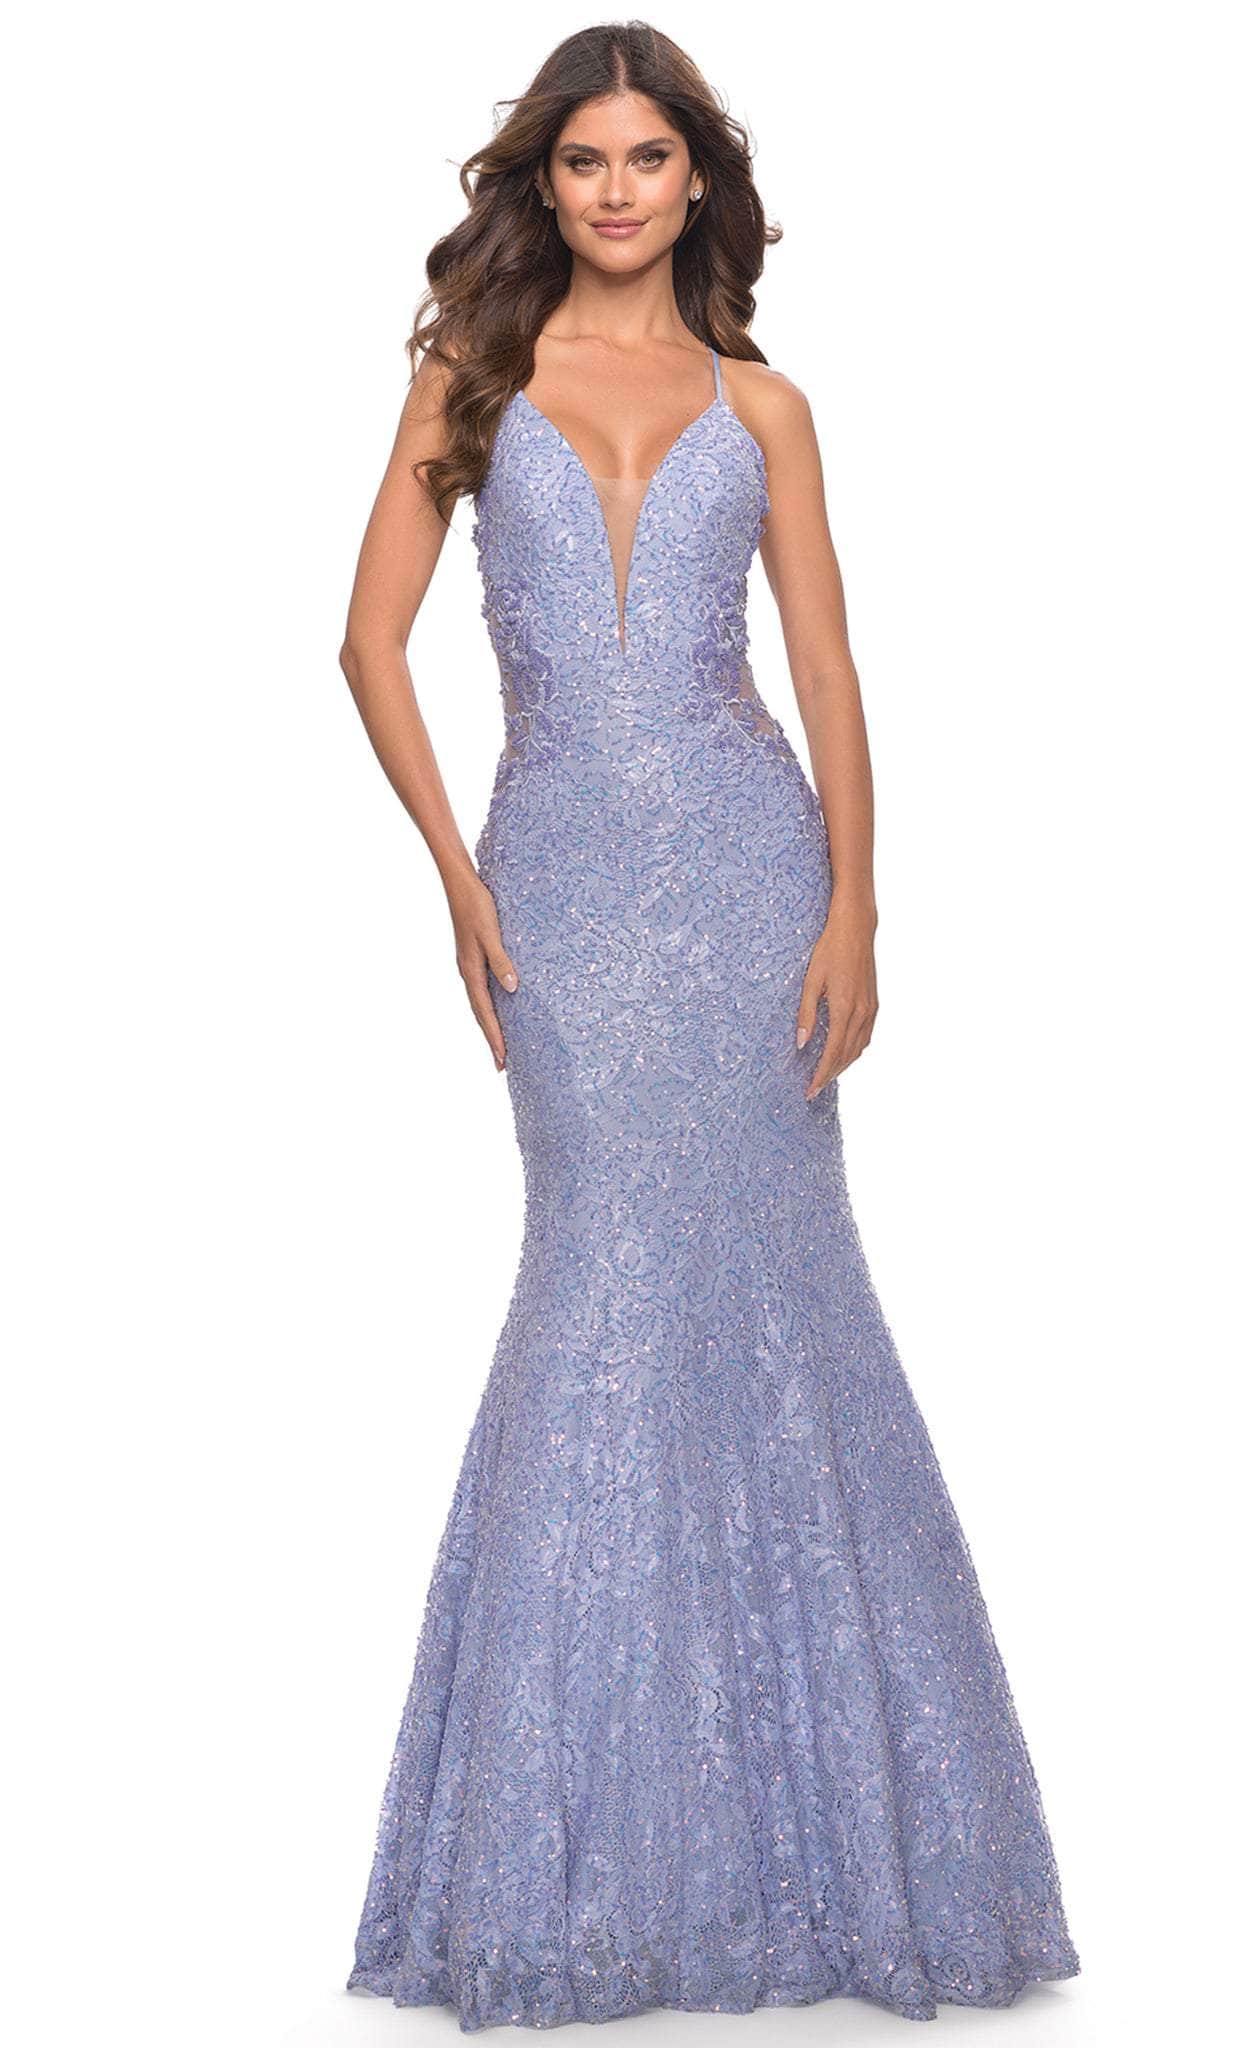 Image of La Femme 31354 - Beaded Sleeveless Prom Dress